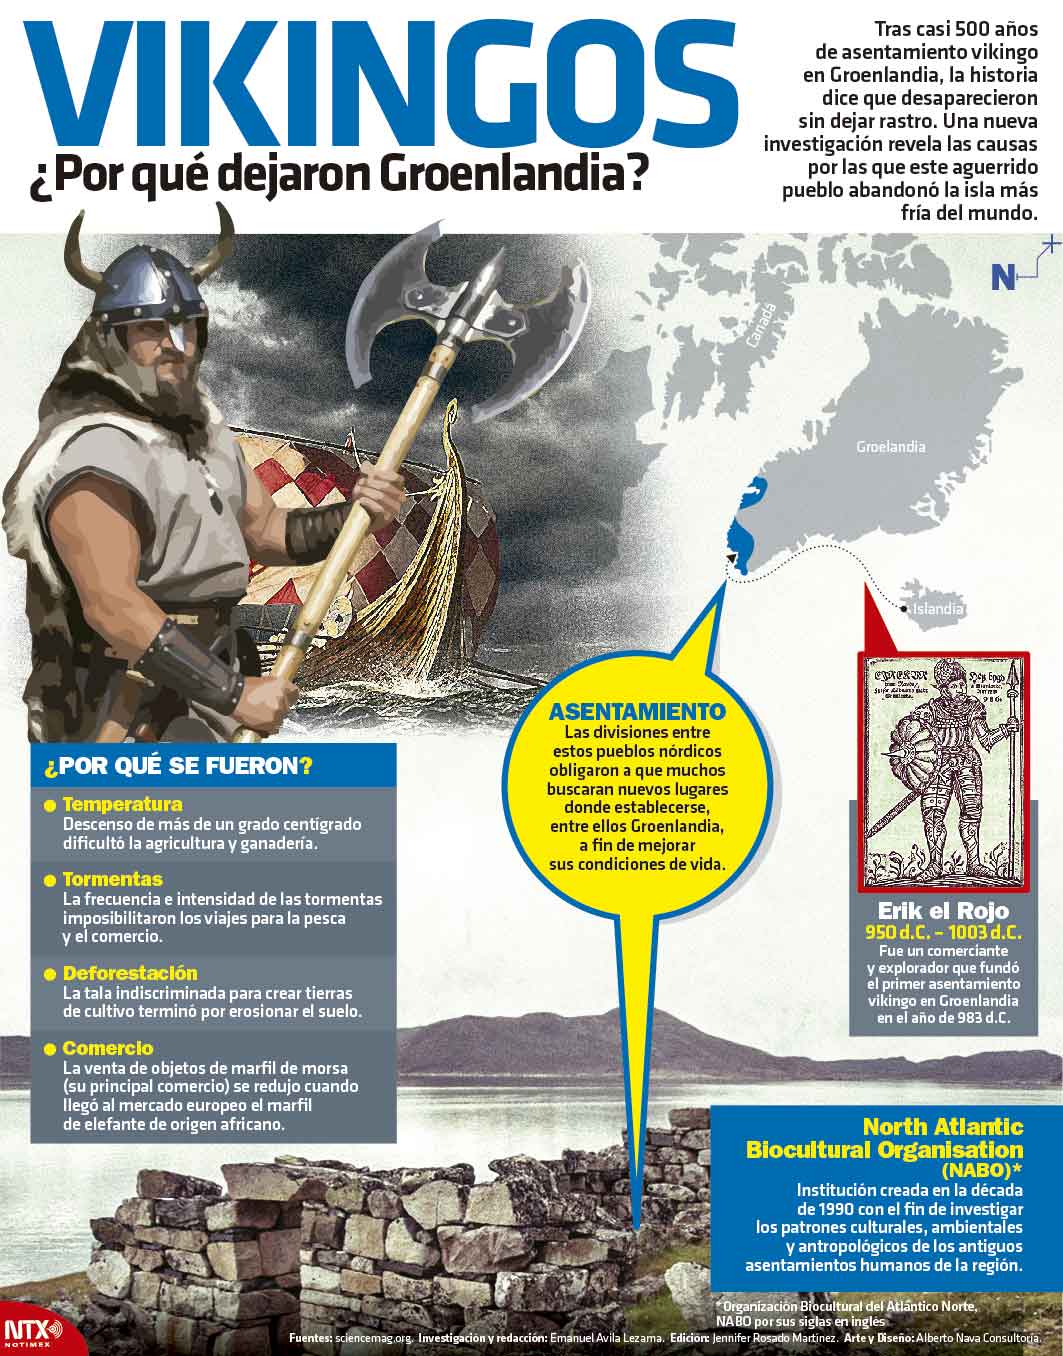 Vikingos Por qu dejaron Groenlandia?